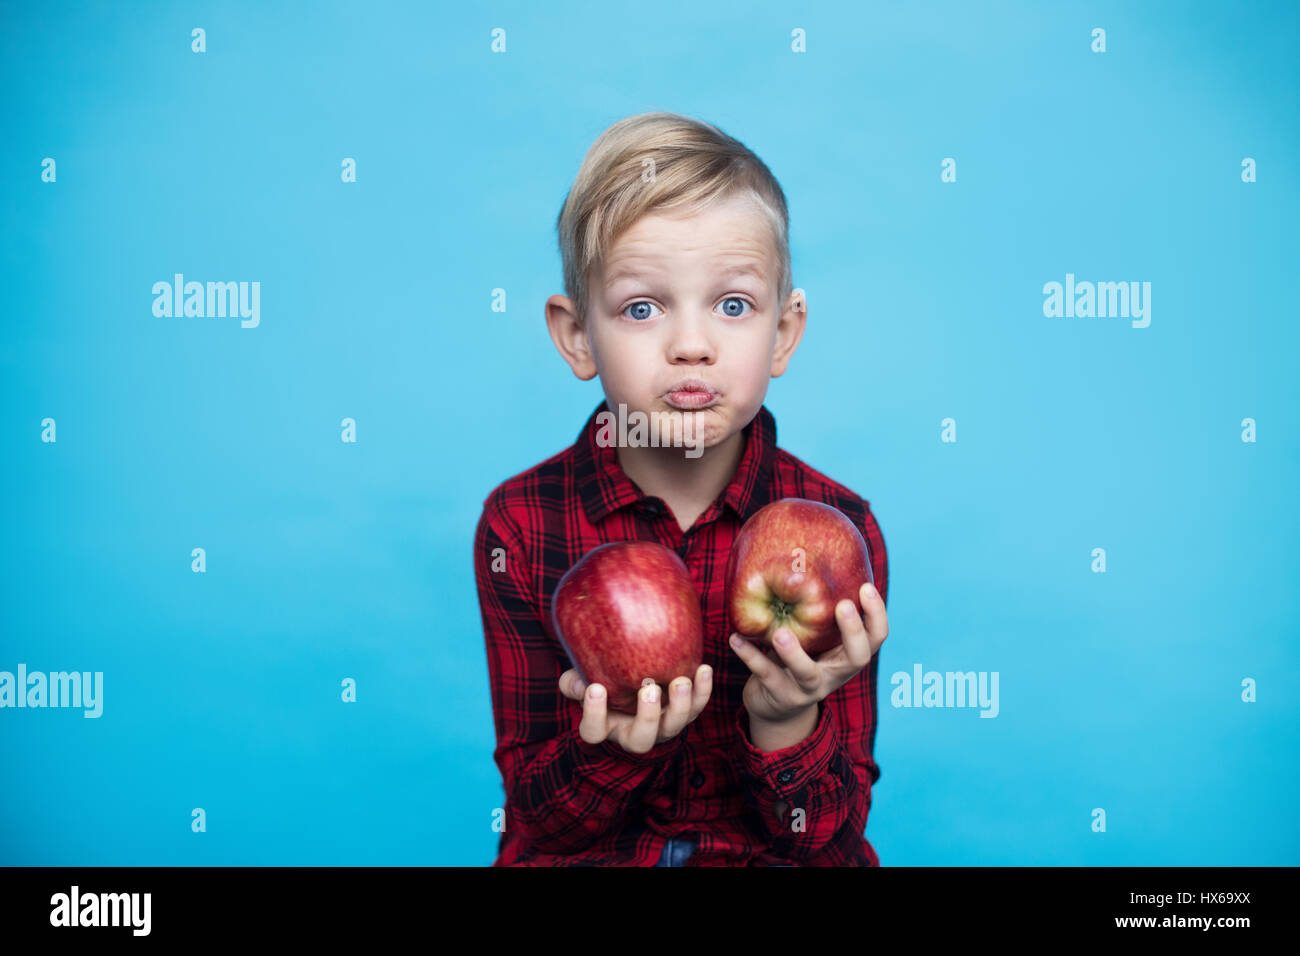 Schön kleines Kind mit Früchten. Studio-Porträt über blauem Hintergrund Stockfoto